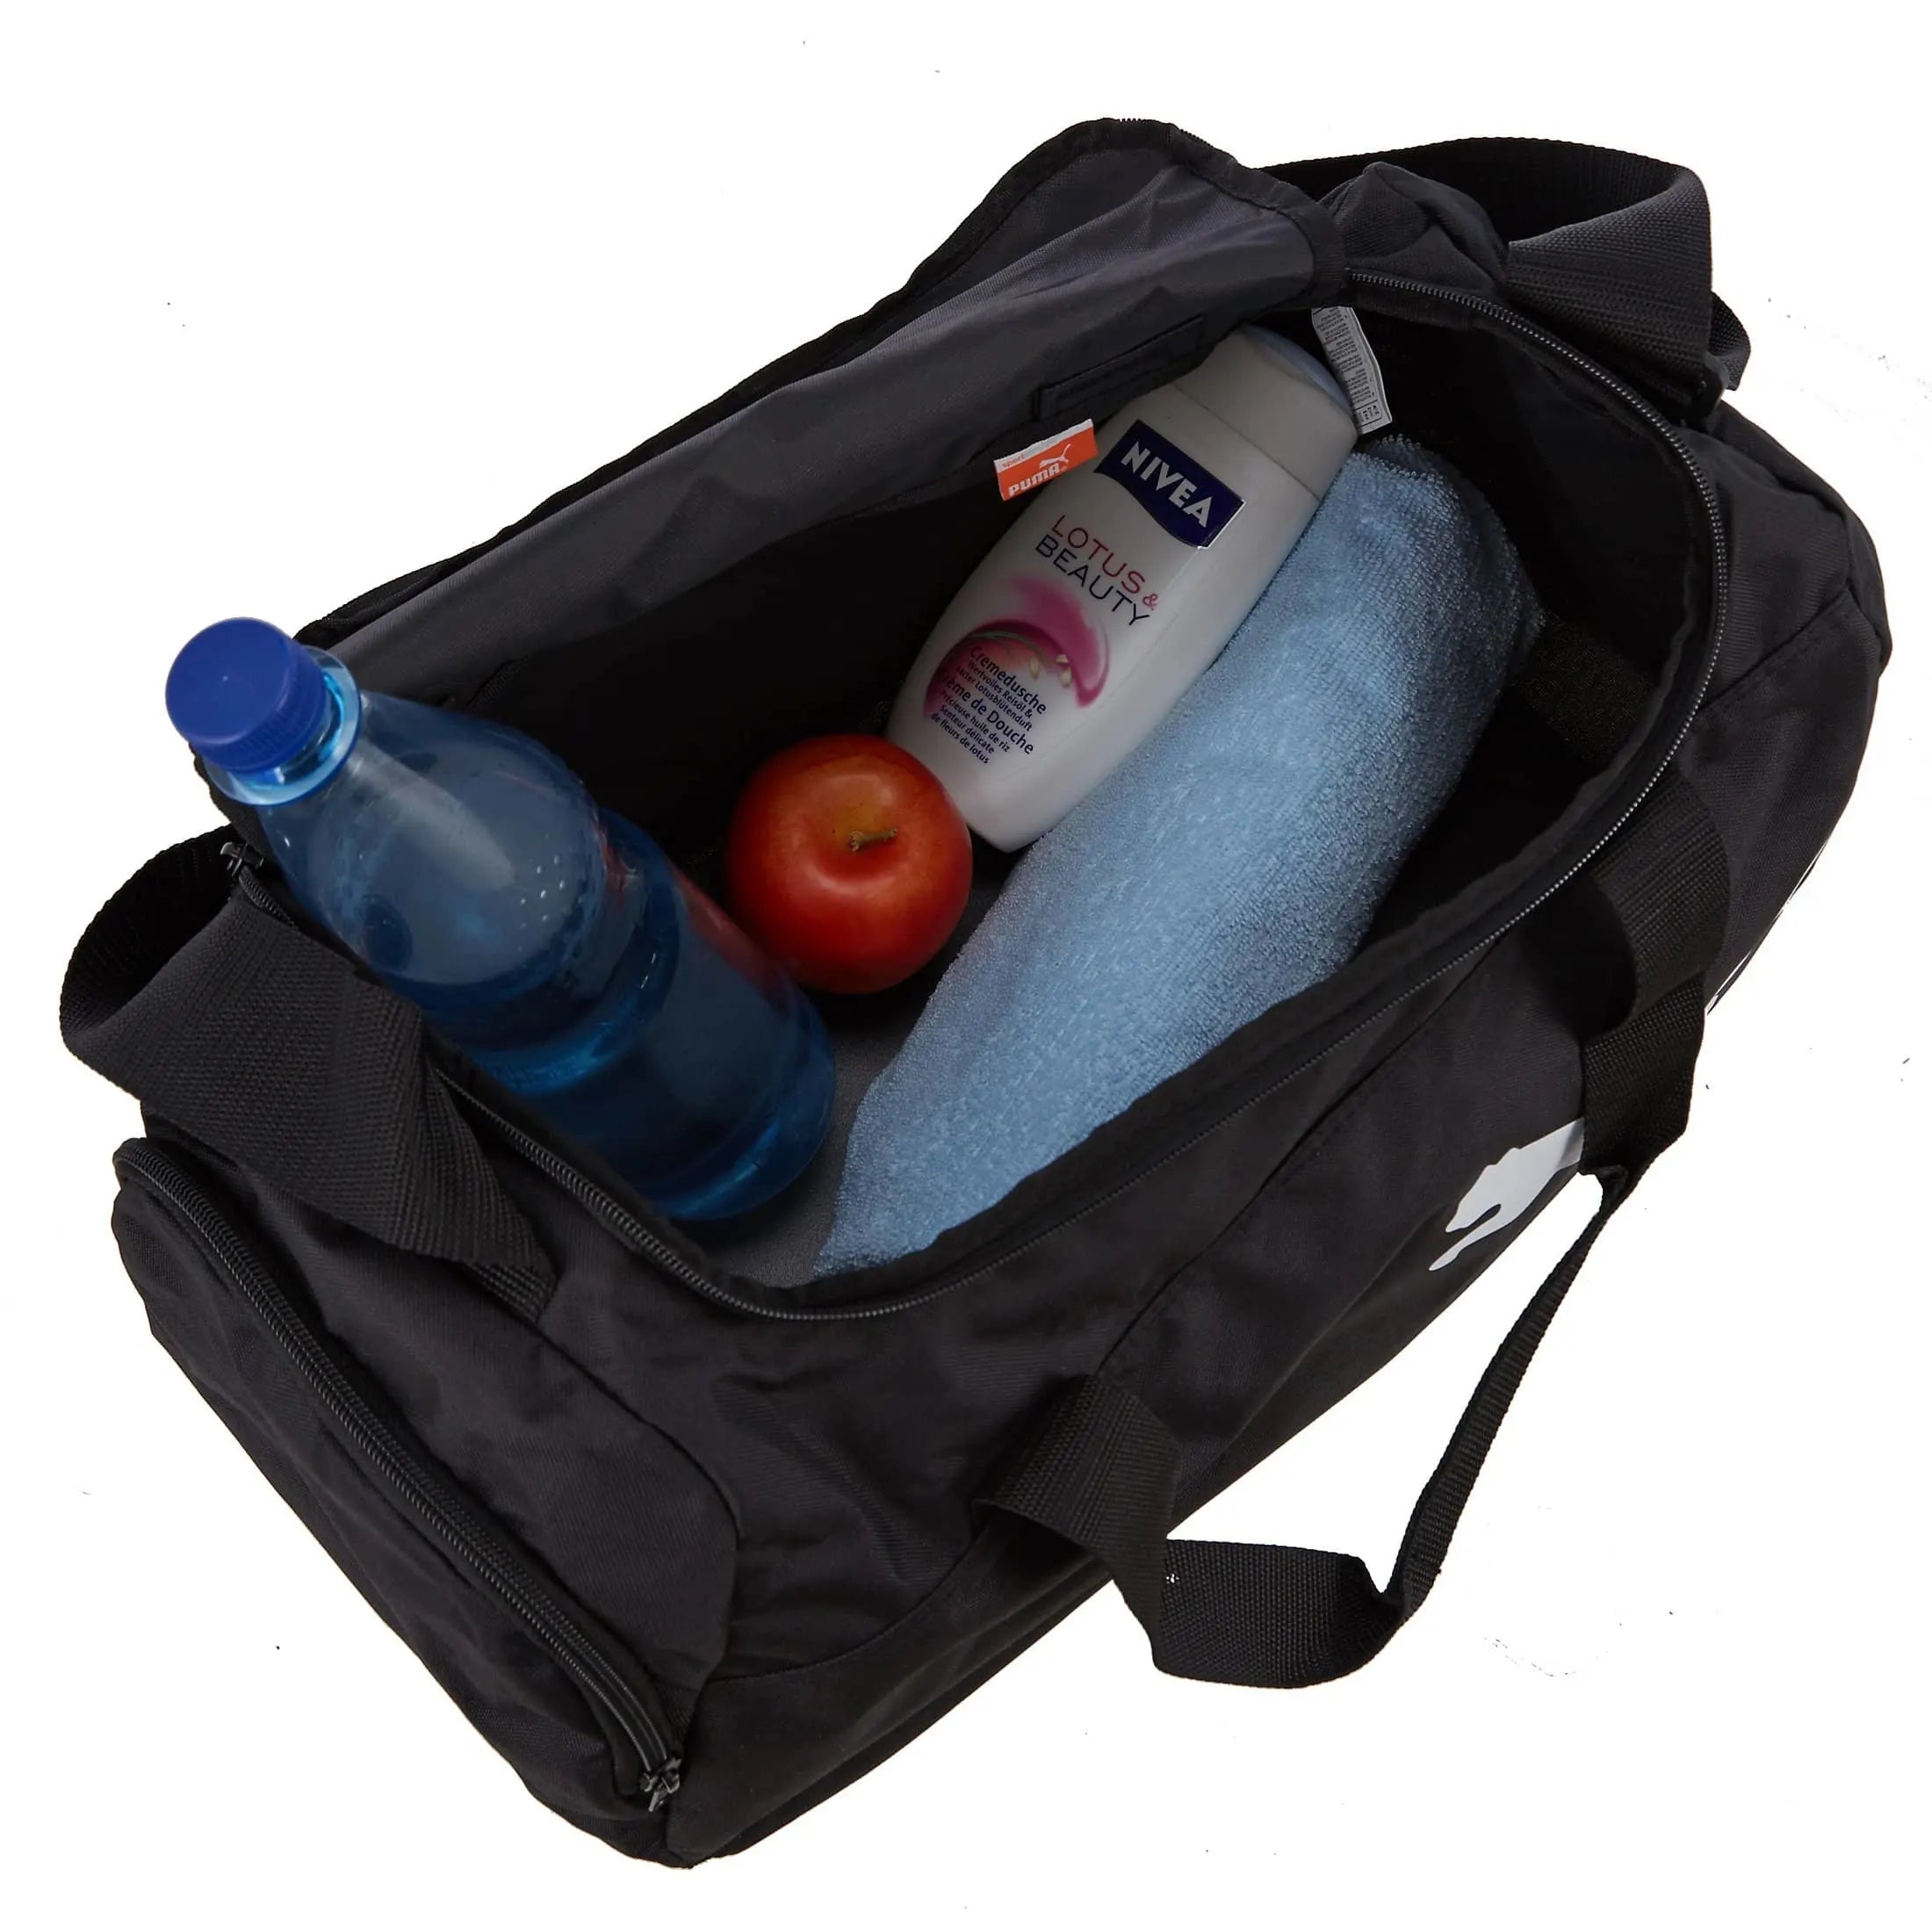 Puma Pro Training Small Bag sac de sport 48 cm - noir-puma royal-blanc